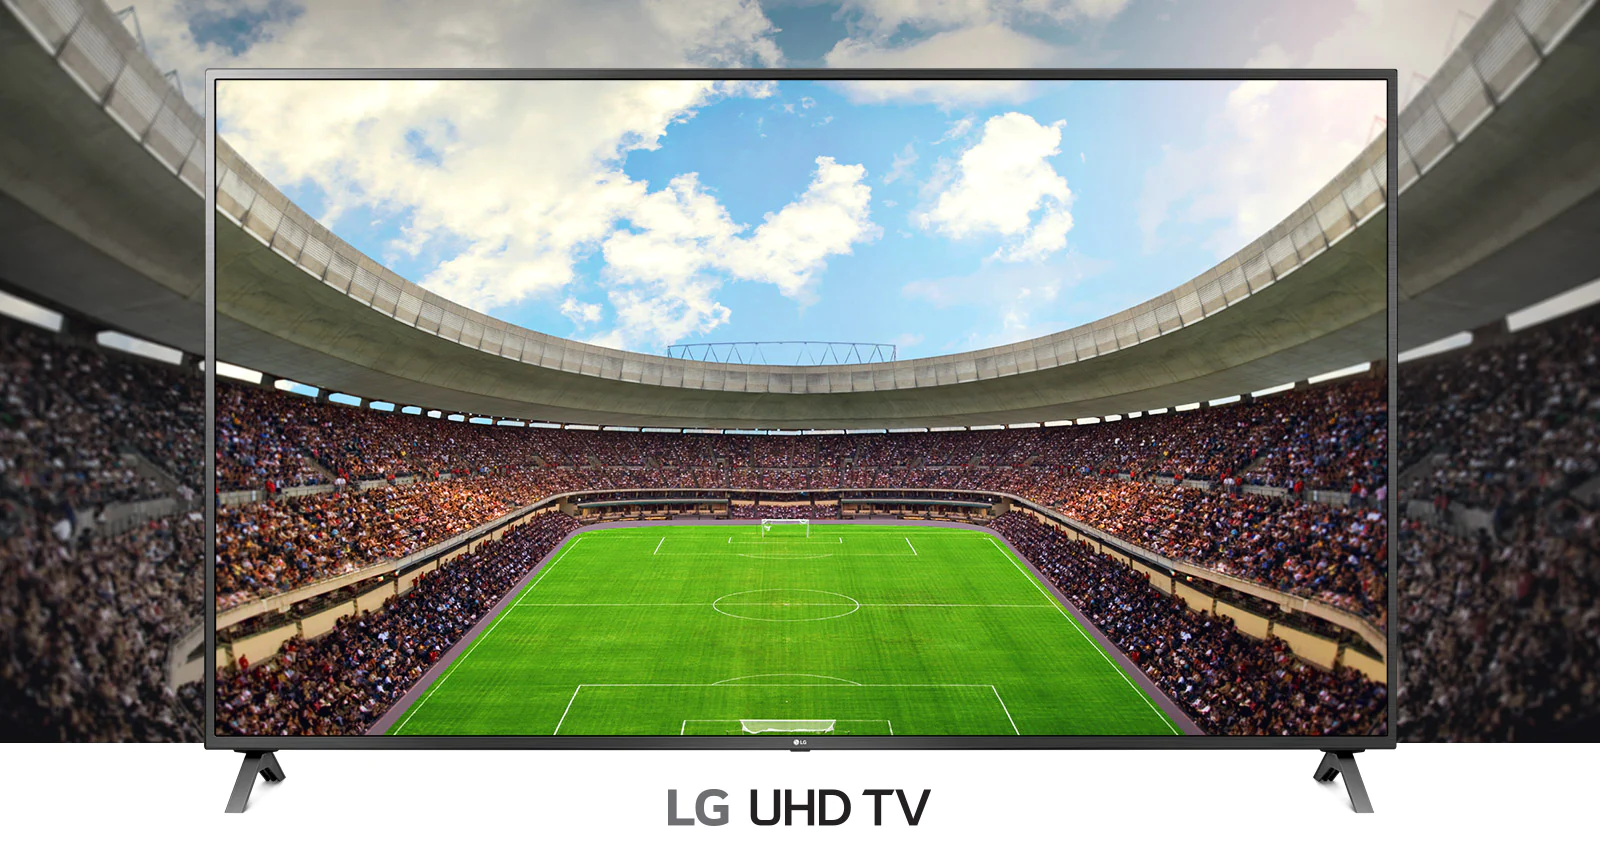 Une vue panoramique d’un stade de football rempli de spectateurs présentée dans un cadre télévisuel.